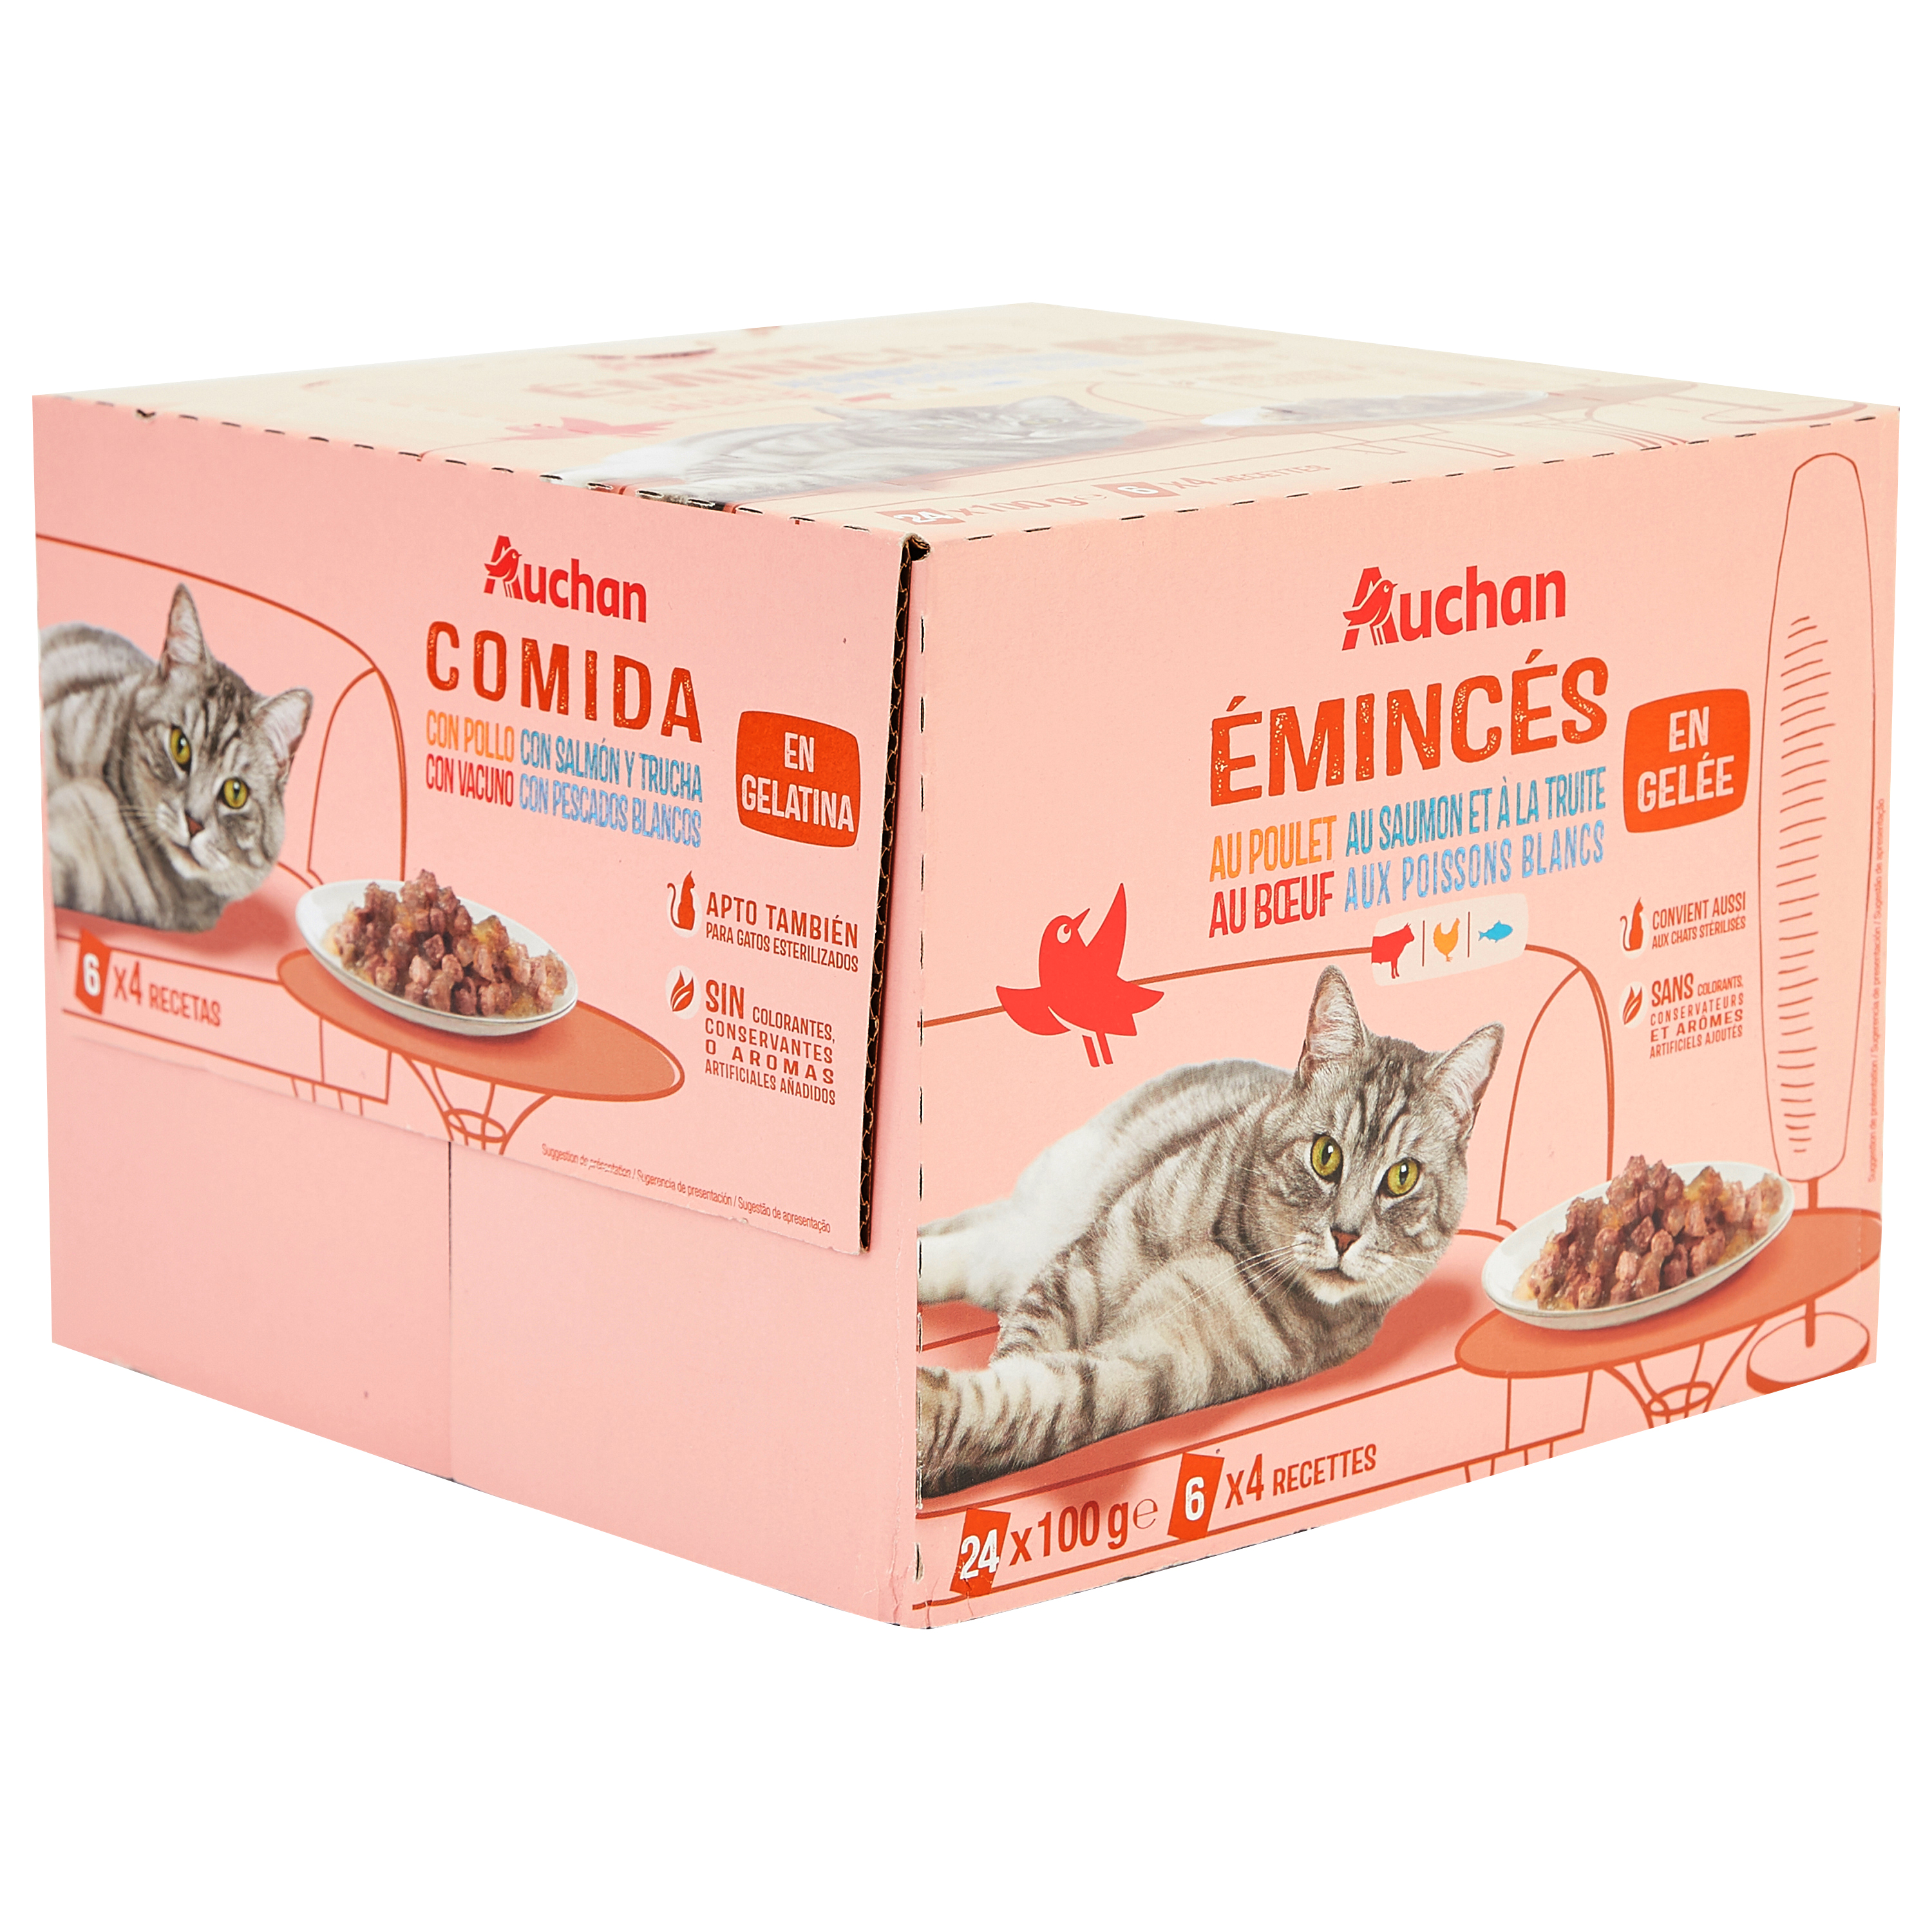 Sachets fraicheur pour chat Emincés en gelée viandes 24x100g